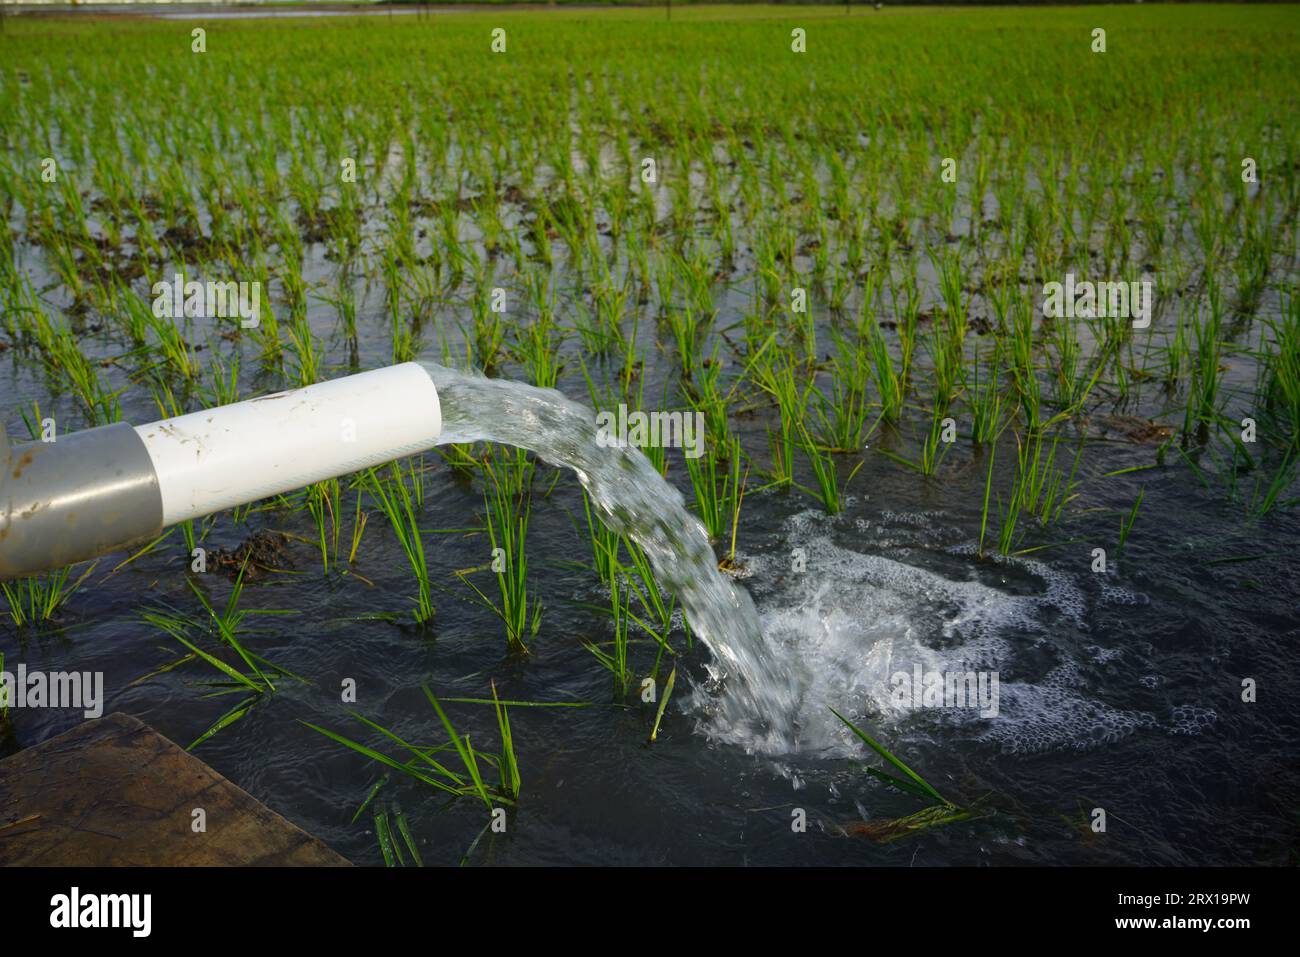 Les plants de blé sont irrigués par jet d'eau. Irrigation des rizières à l'aide de puits de pompage avec la technique de pompage de l'eau du sol pour couler Banque D'Images